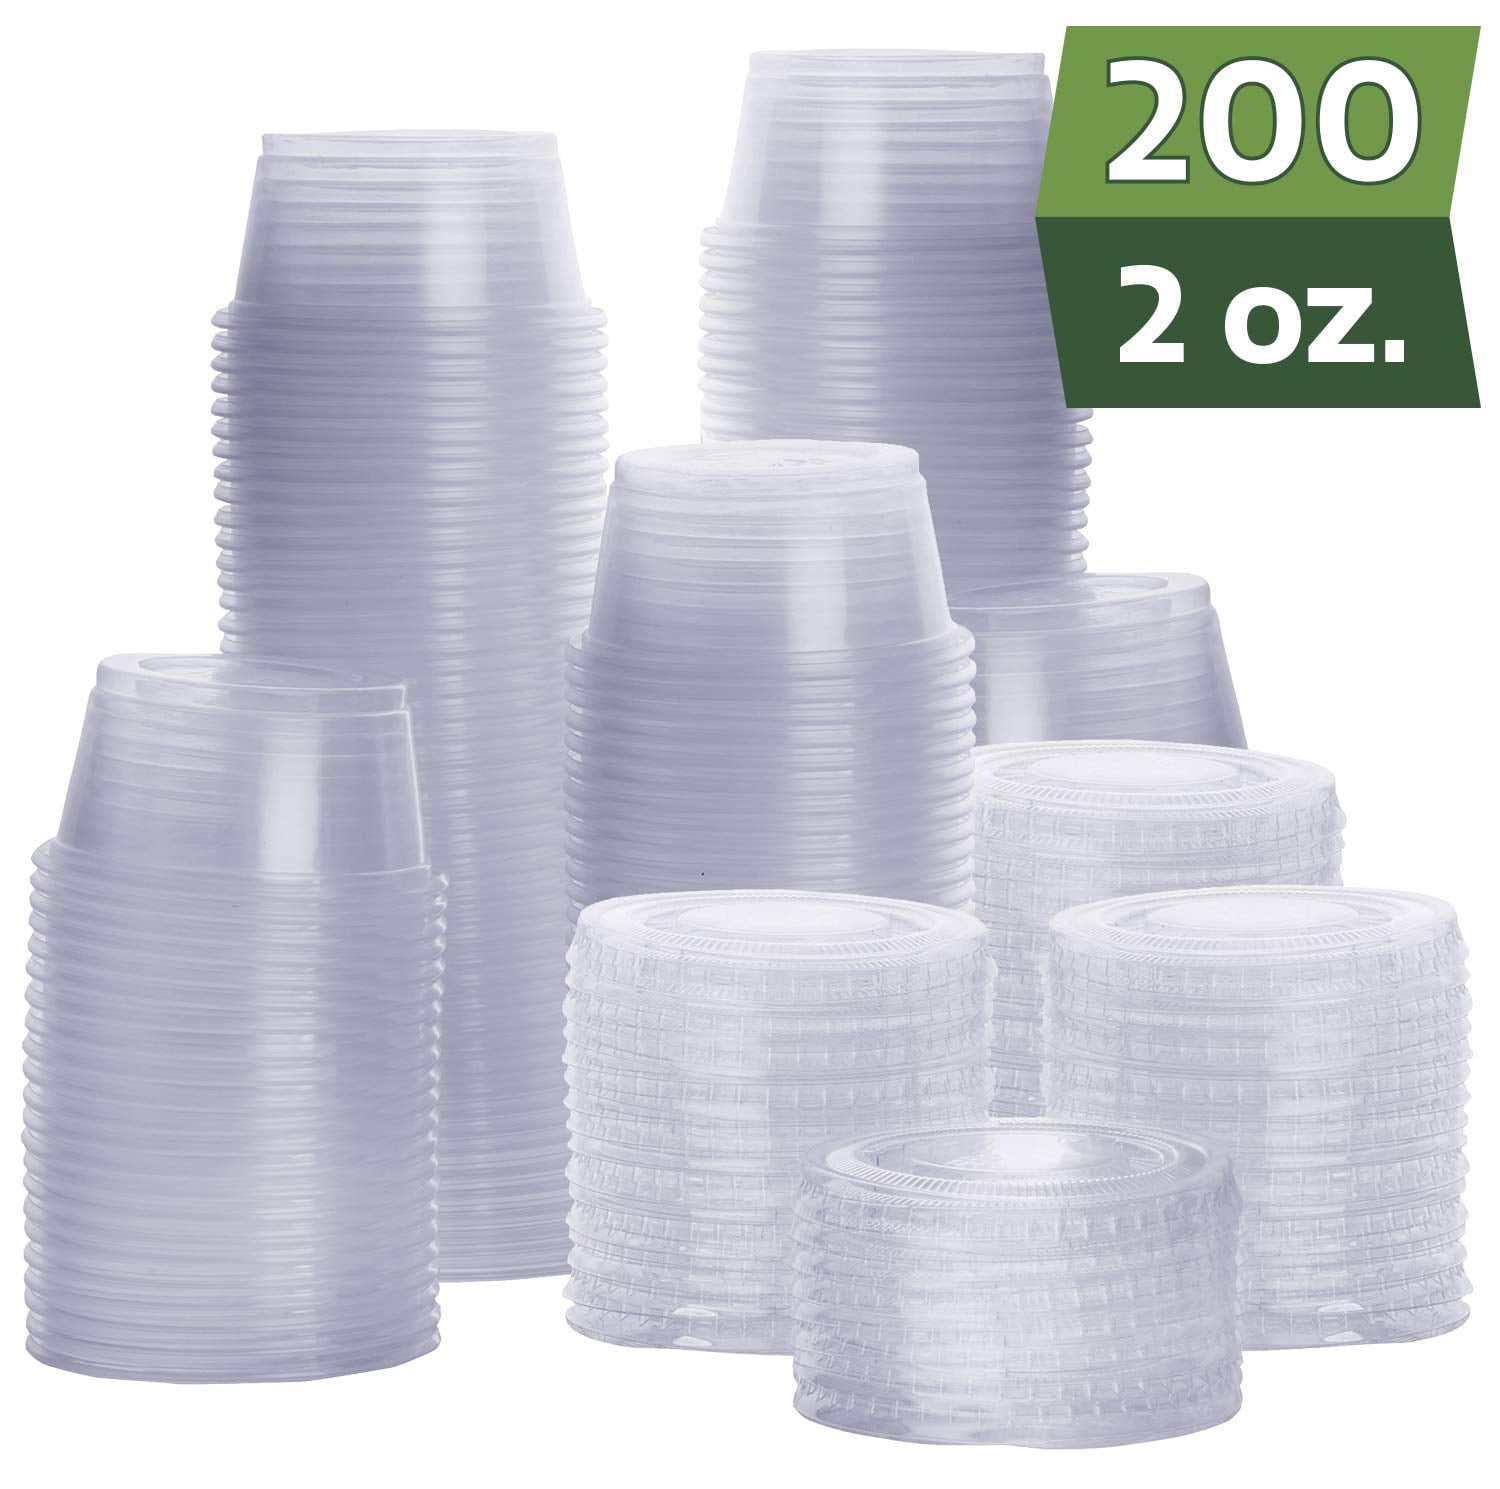 200 CUPS PORTION CUPS 2 oz SOLO PLASTIC SAUCES/JELLO SHOT/MEDS 200 